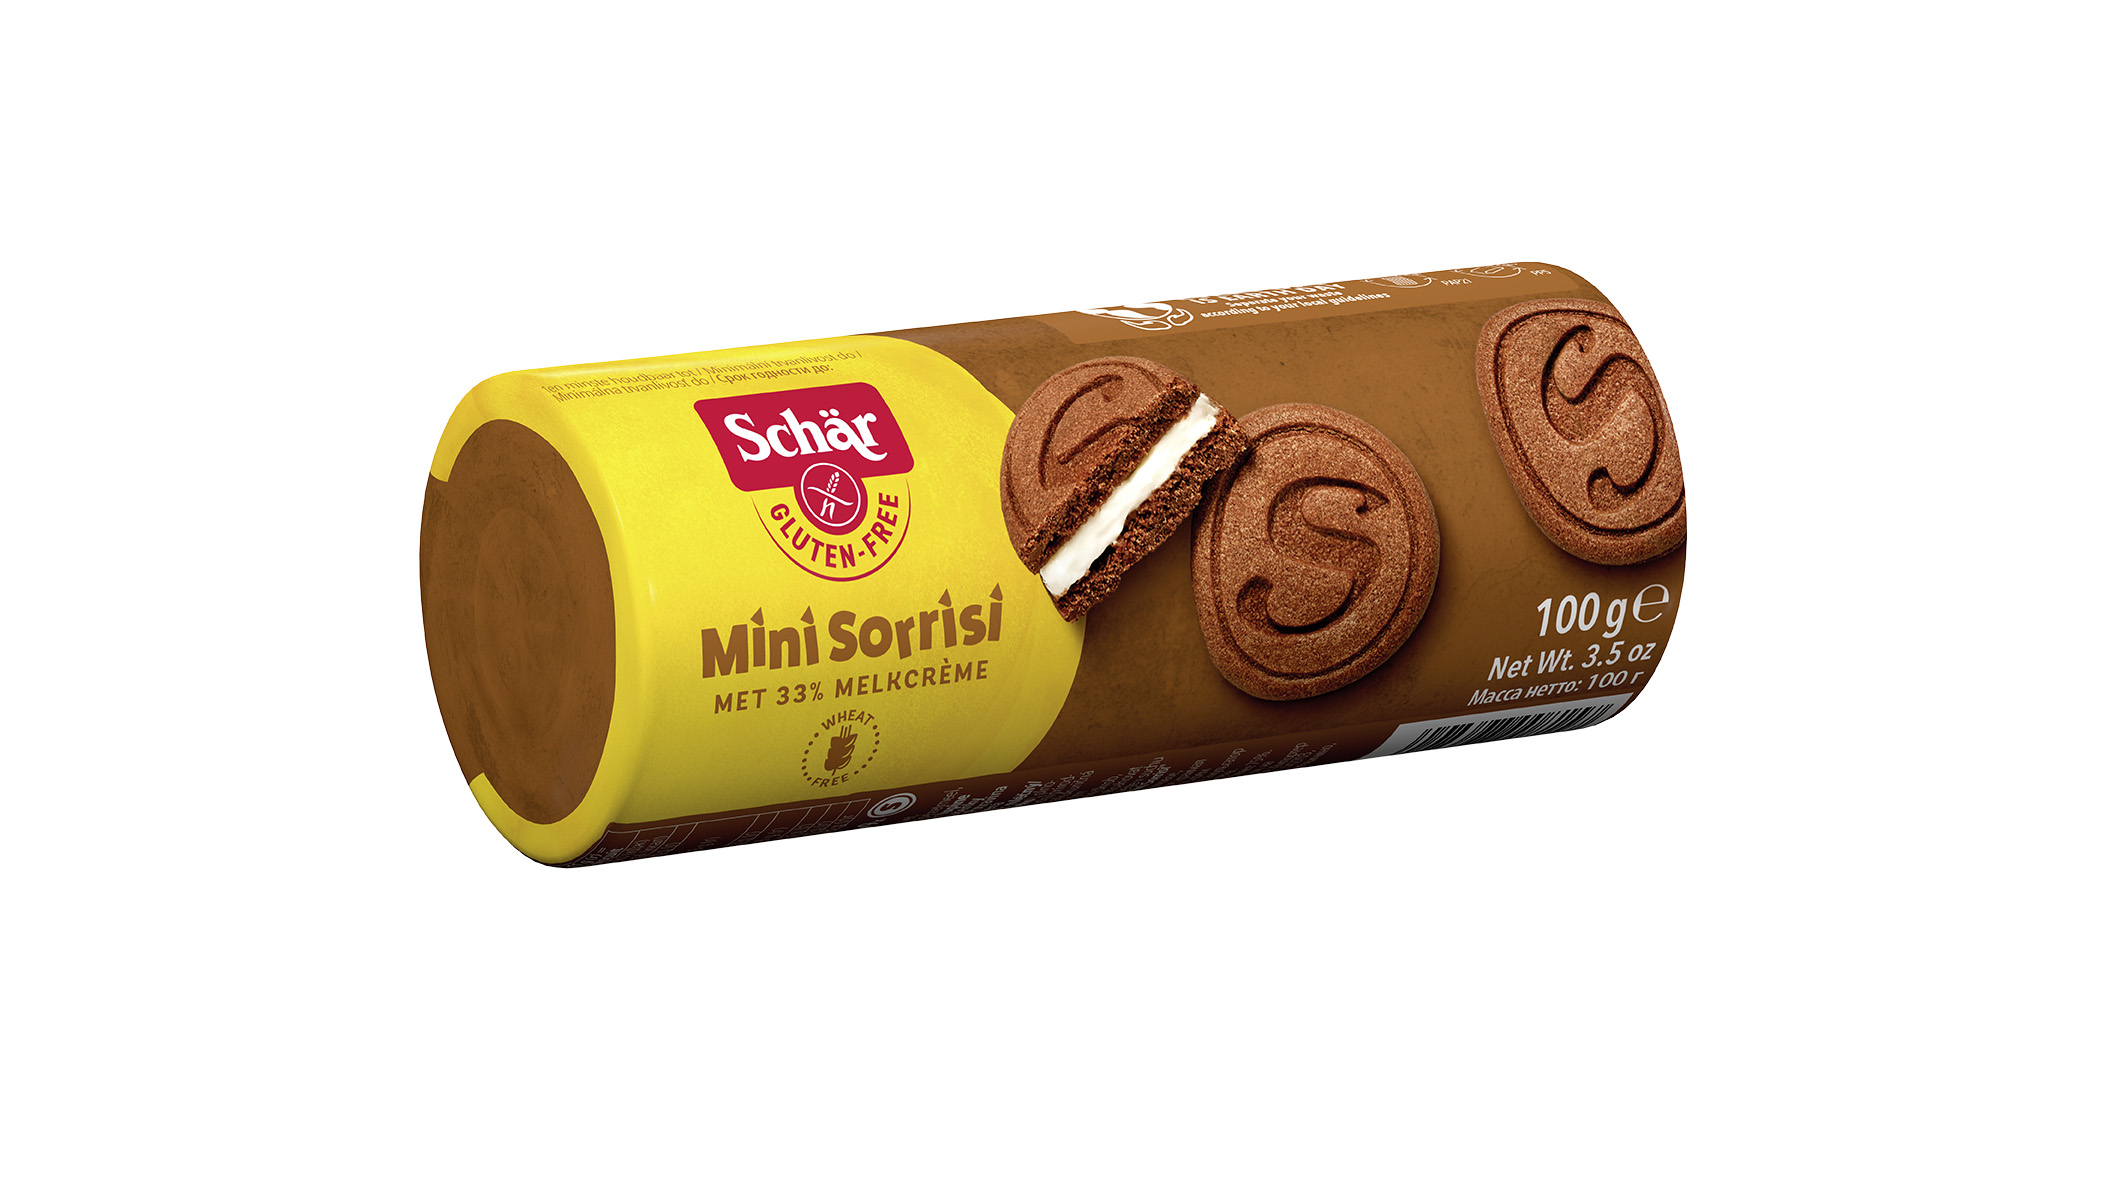 Шоколадное печенье Schar mini sorrisi с молочной прослойкой 100 г